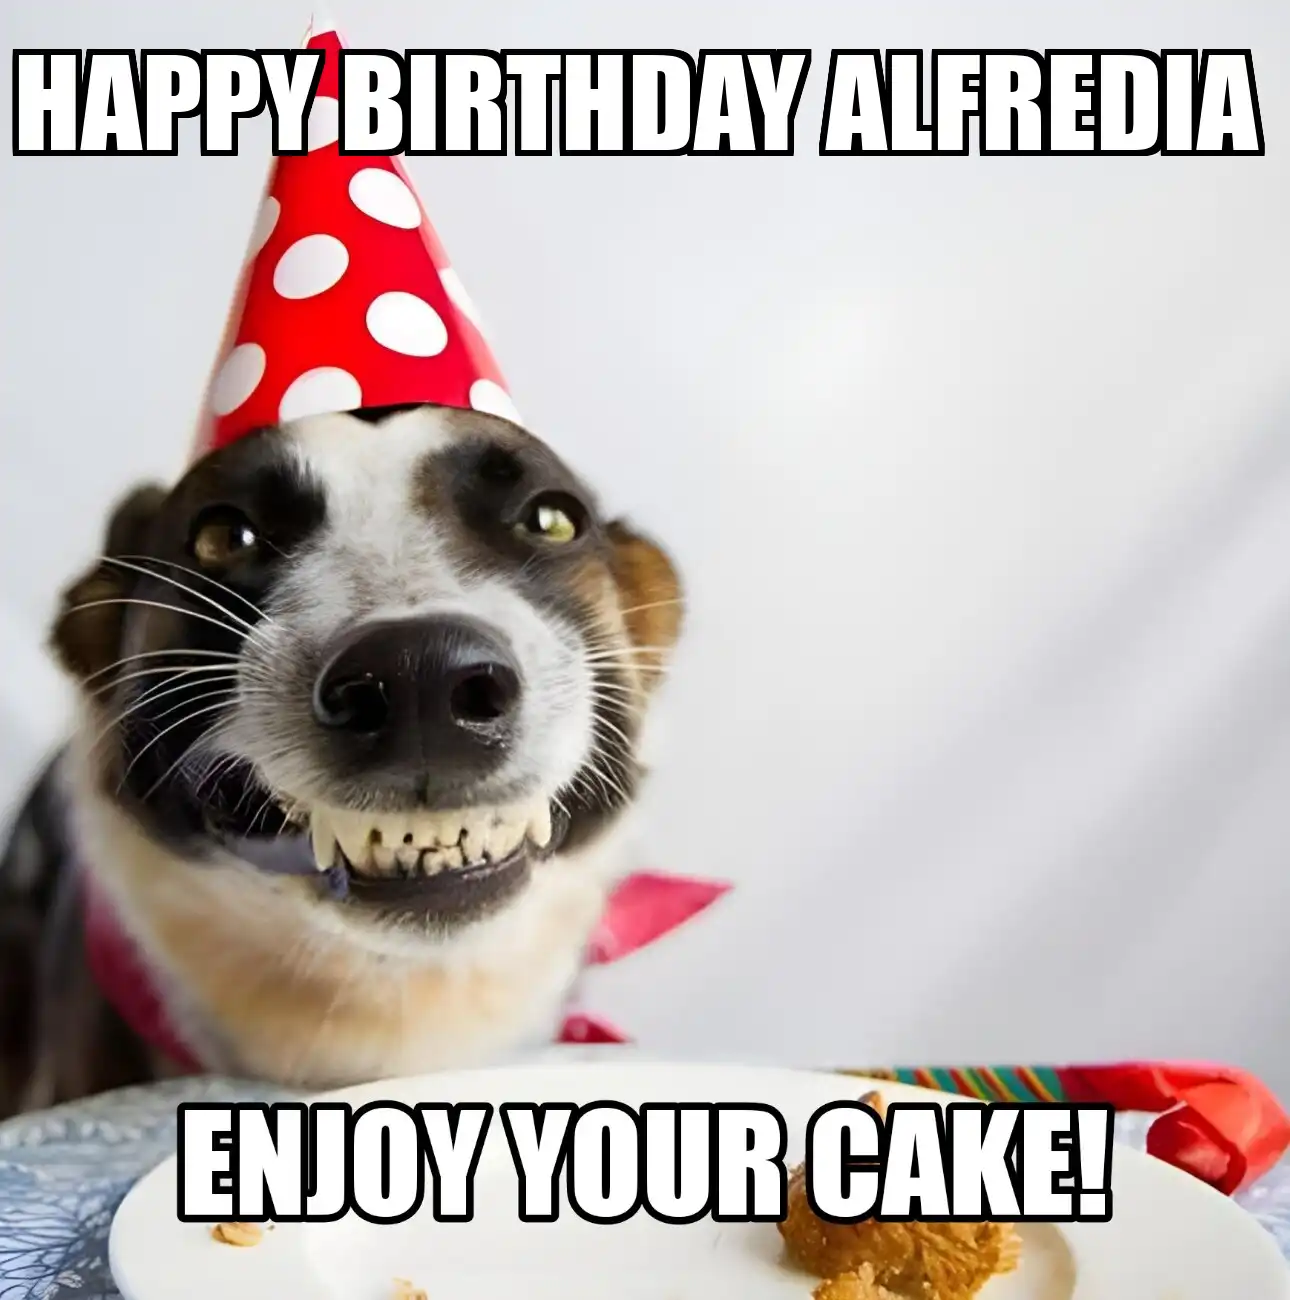 Happy Birthday Alfredia Enjoy Your Cake Dog Meme